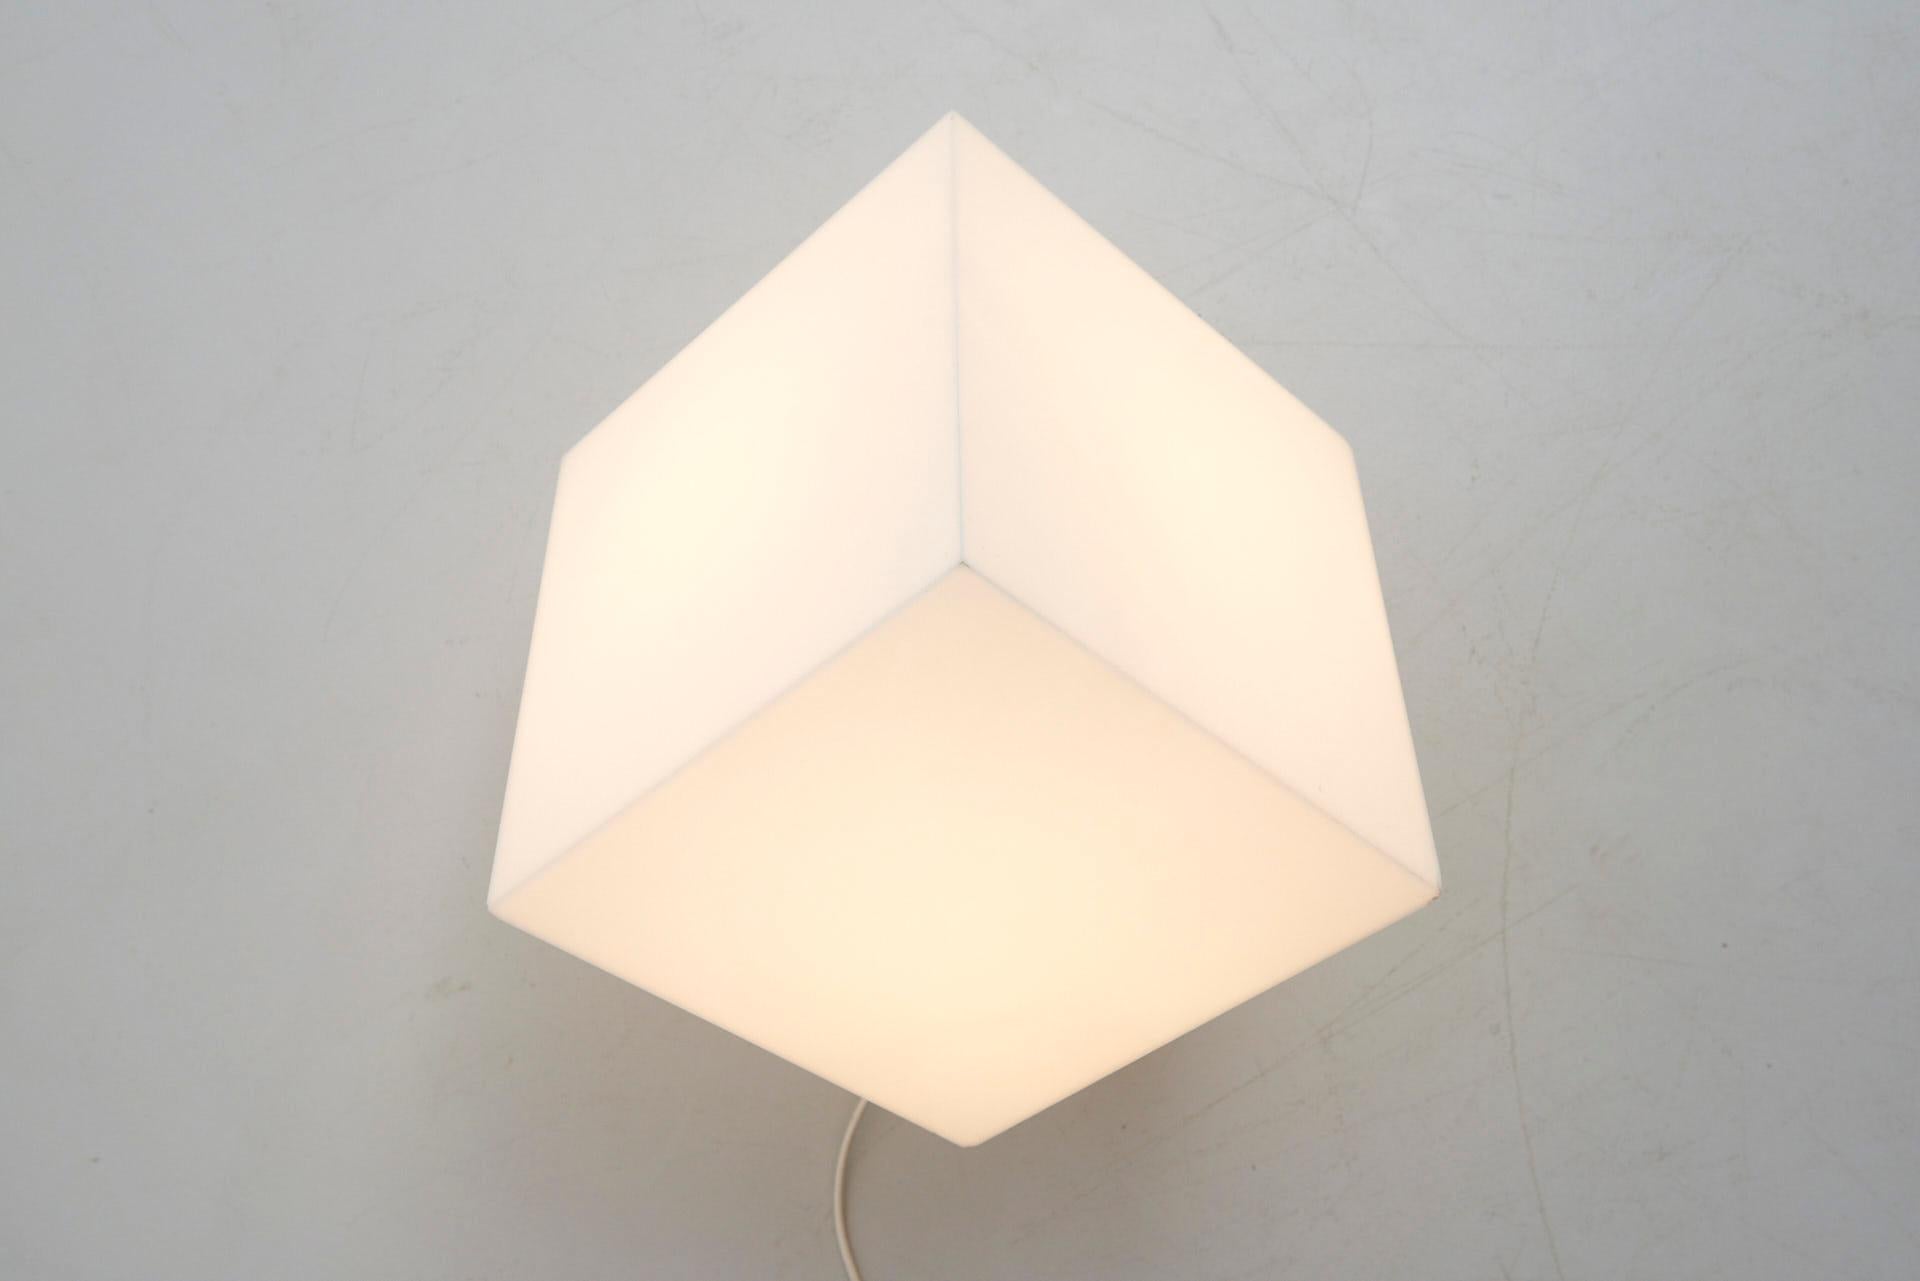 Cube Light by RAAK by Paul Driessen 1